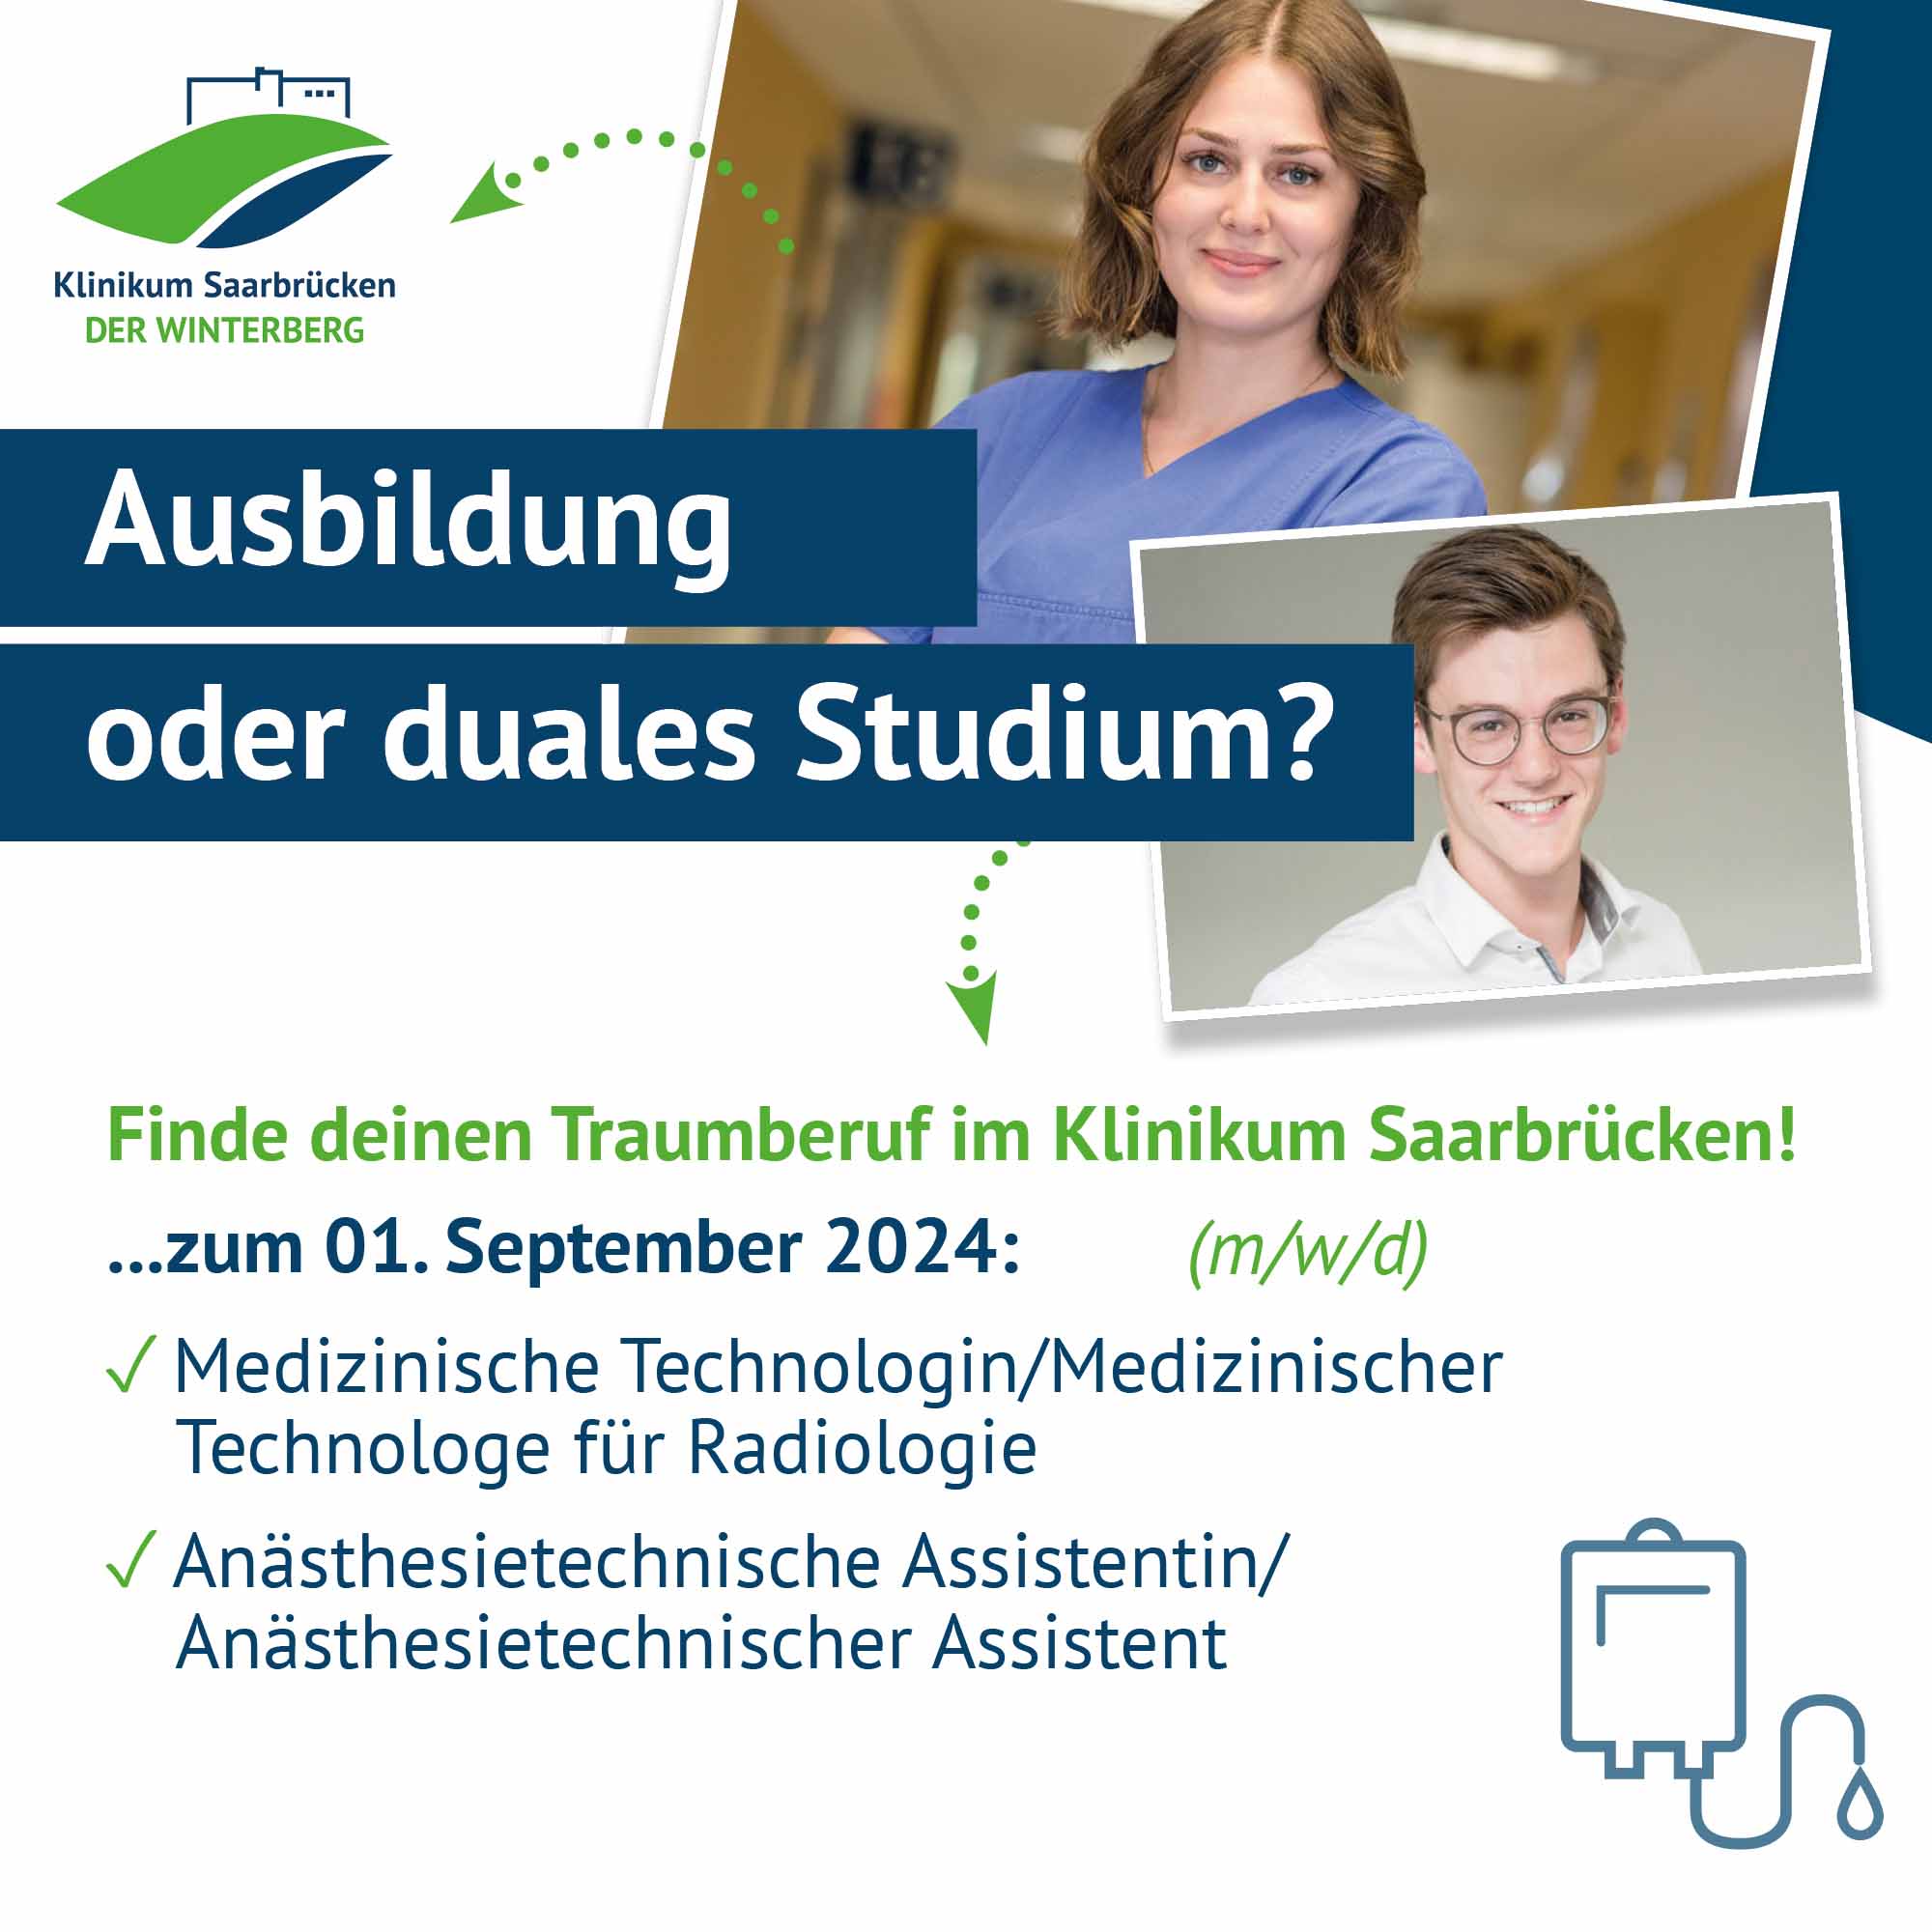 Übersicht über die Ausbildungsberufe im September 2024 im Klinikum Saarbrücken auf dem Winterberg